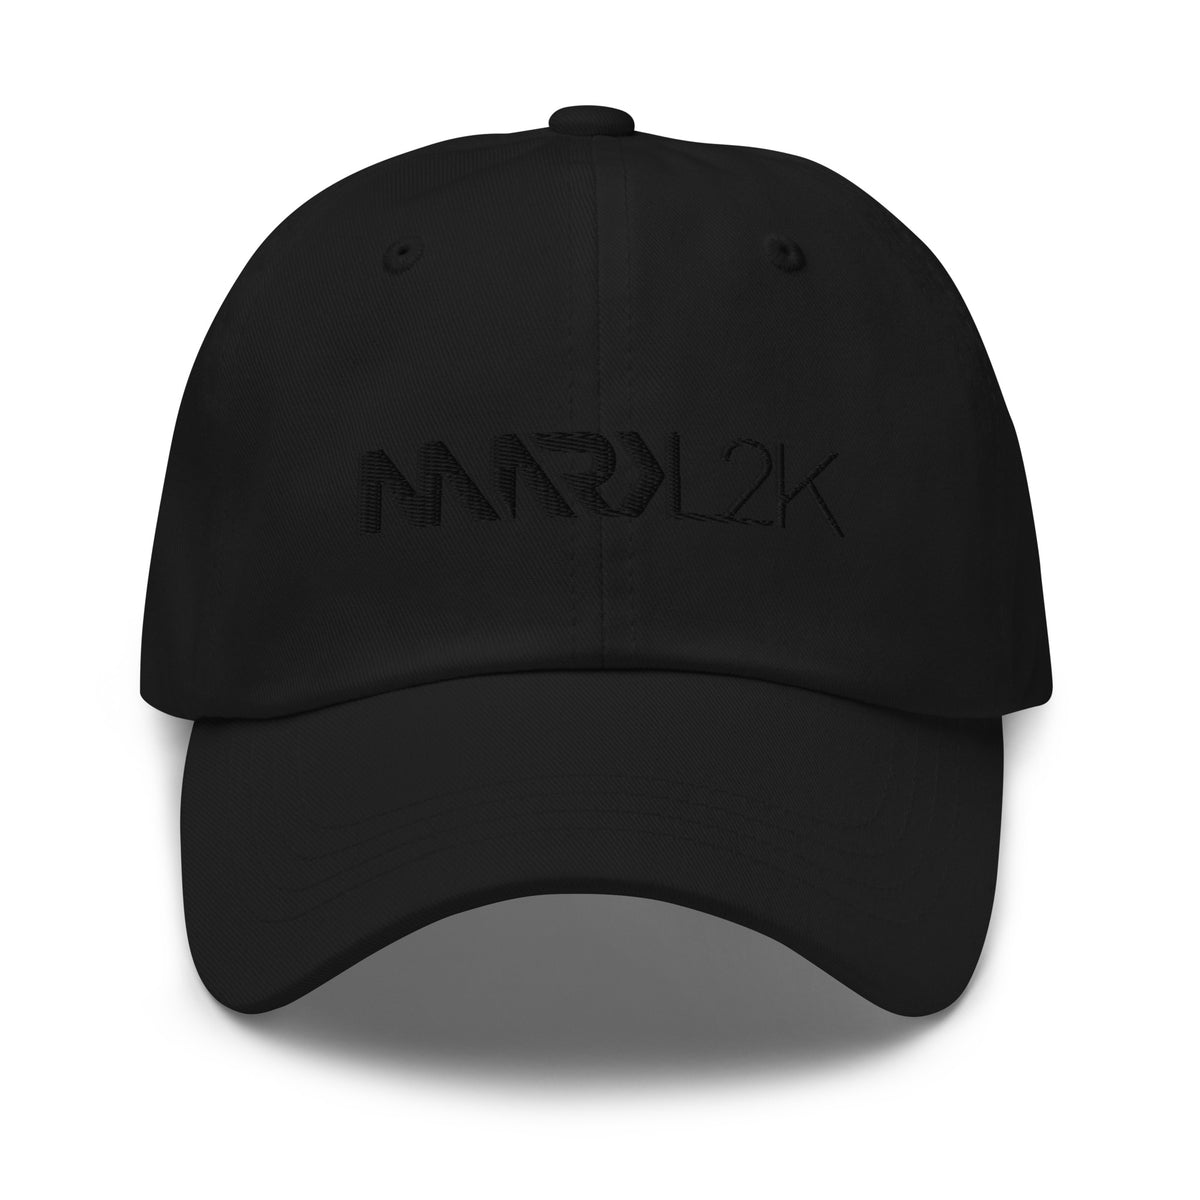 MarkL2K - Dad-Cap mit Stick